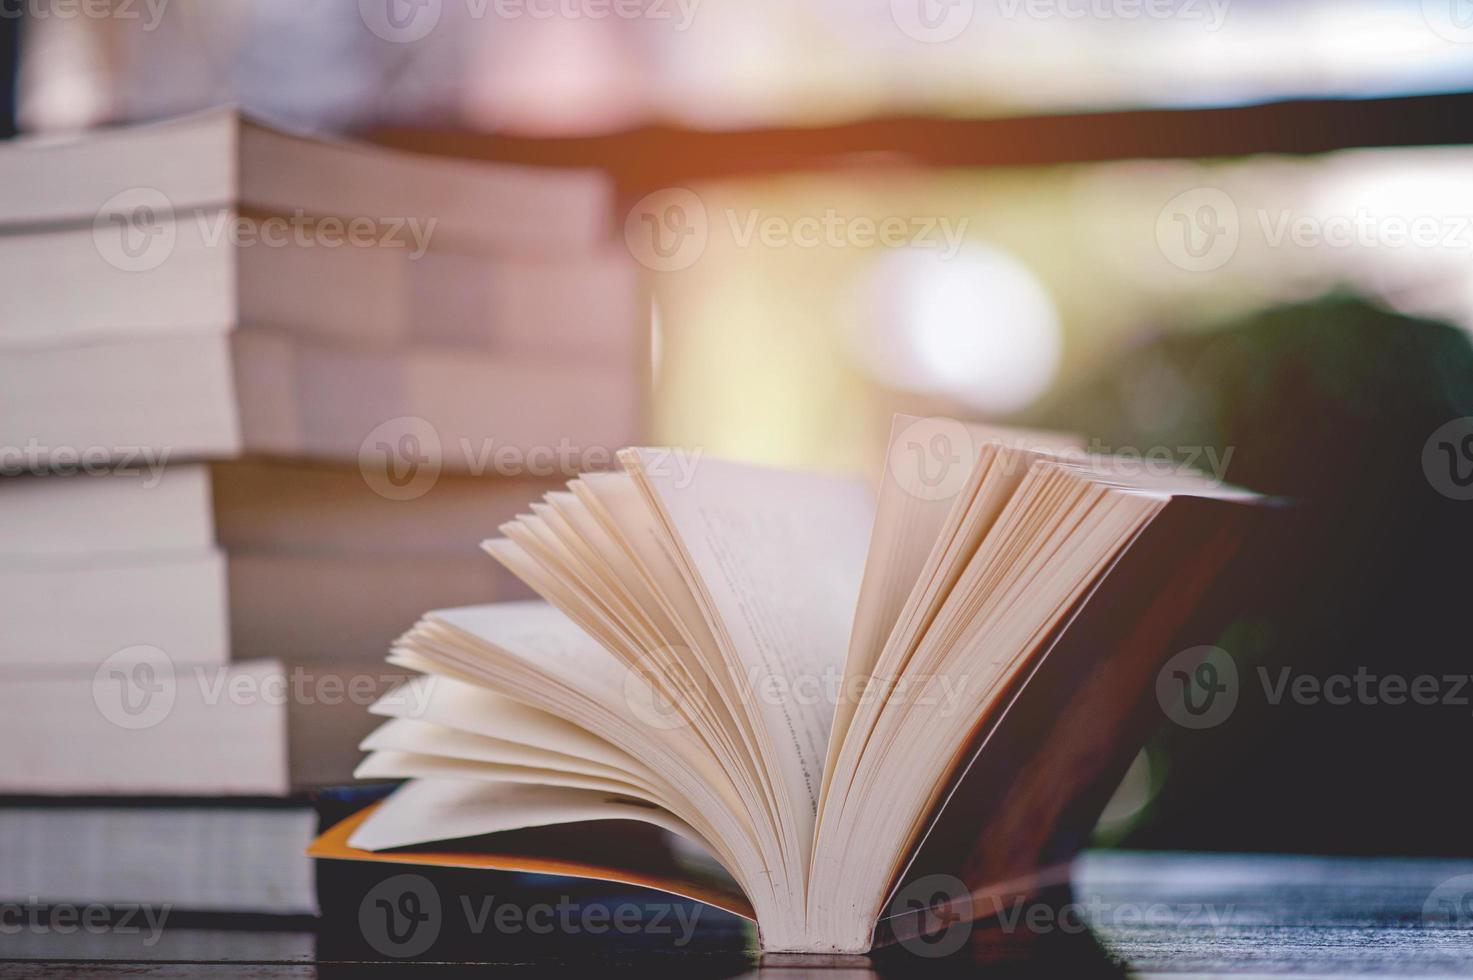 bok placerad på skrivbordet en massa böcker, vackra färger för att studera, kunskap, utbildning - bilder foto